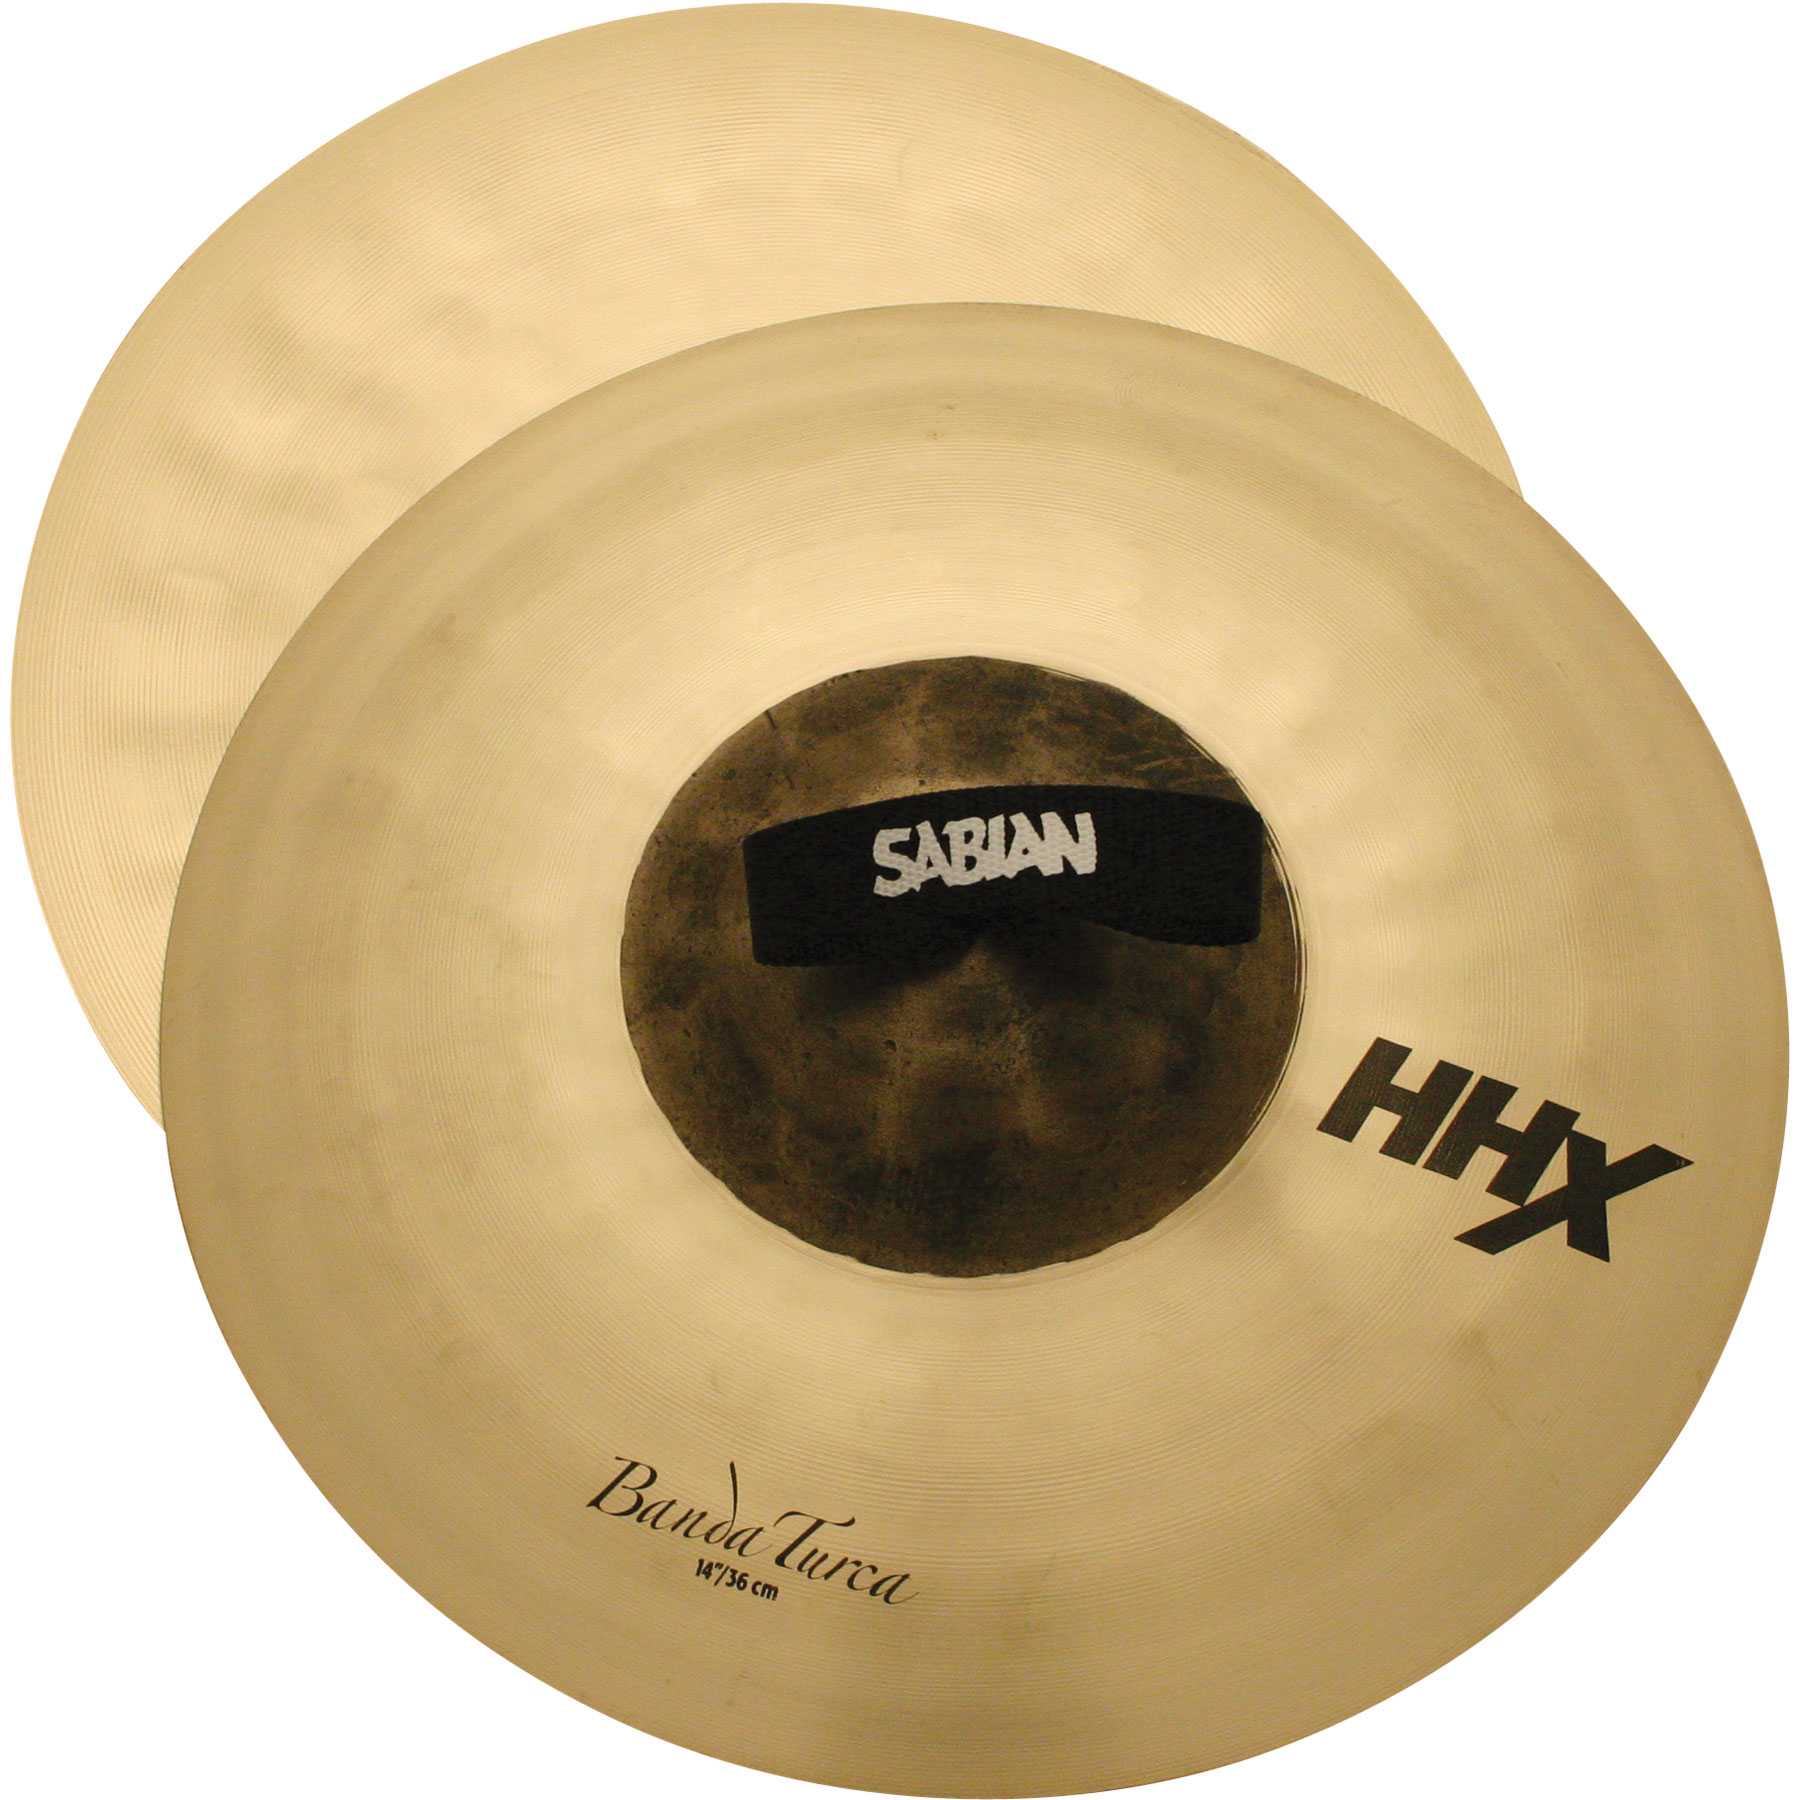 Sabian 14" HHX Banda Turca Clash Cymbals